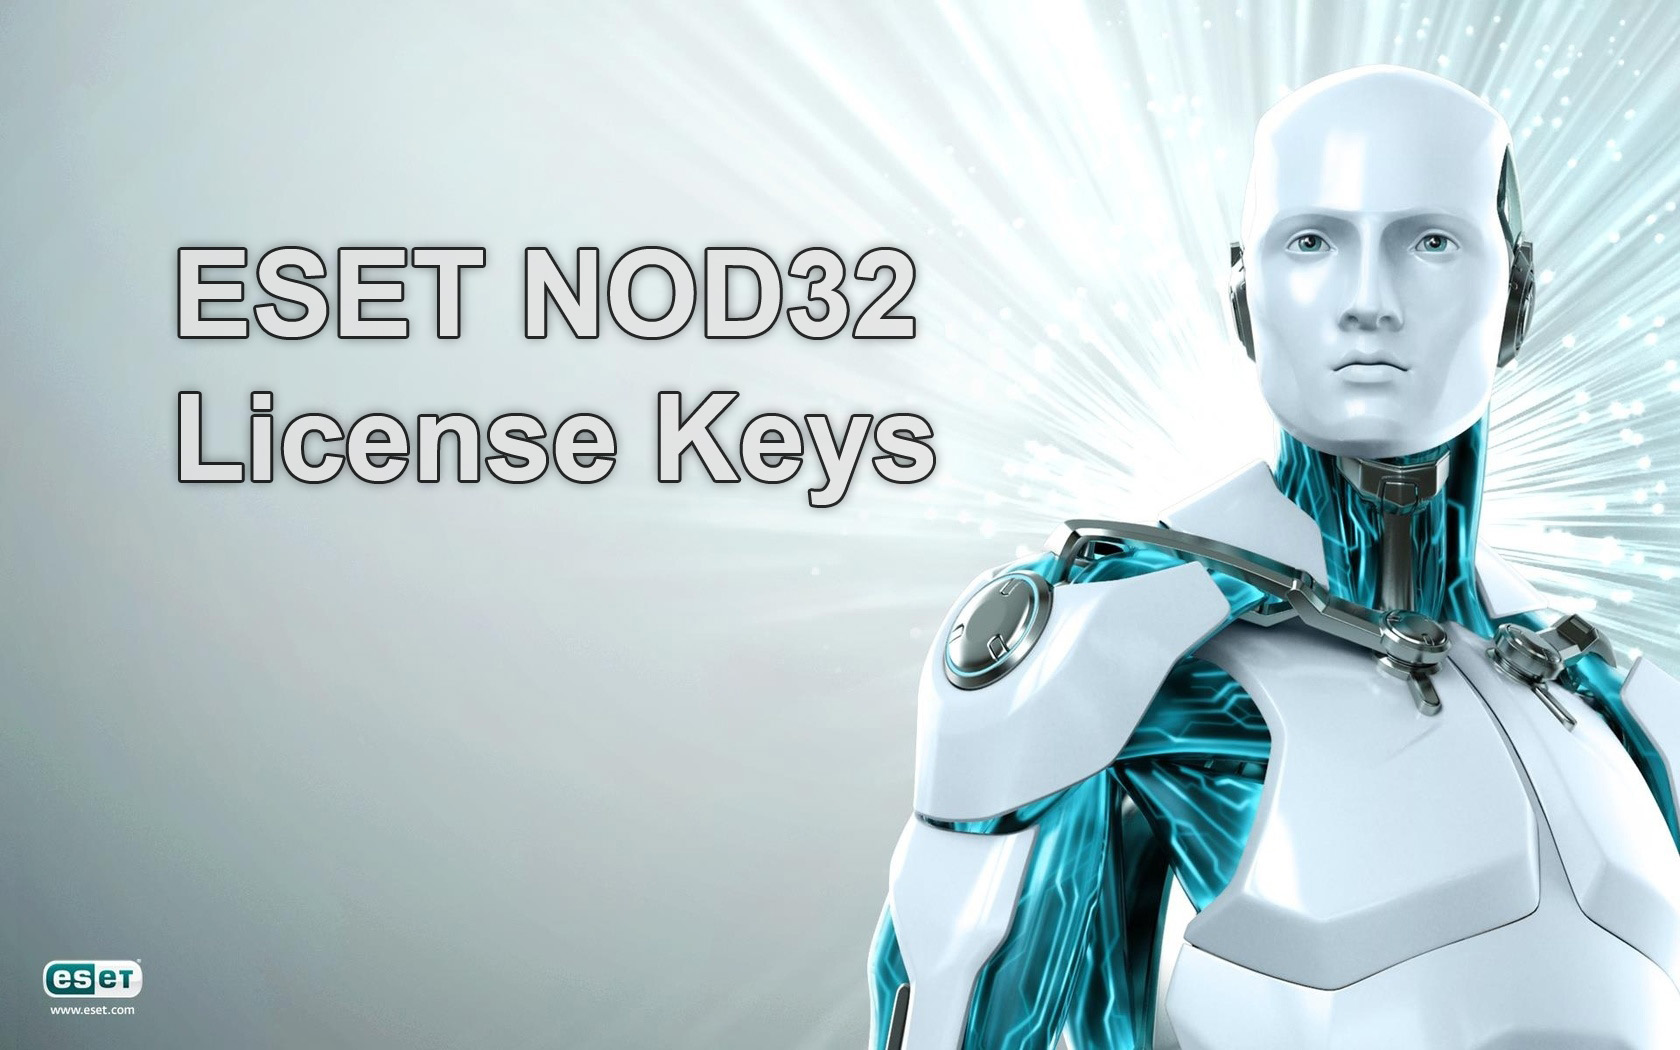 eset nod32 license key 2022 free telegram